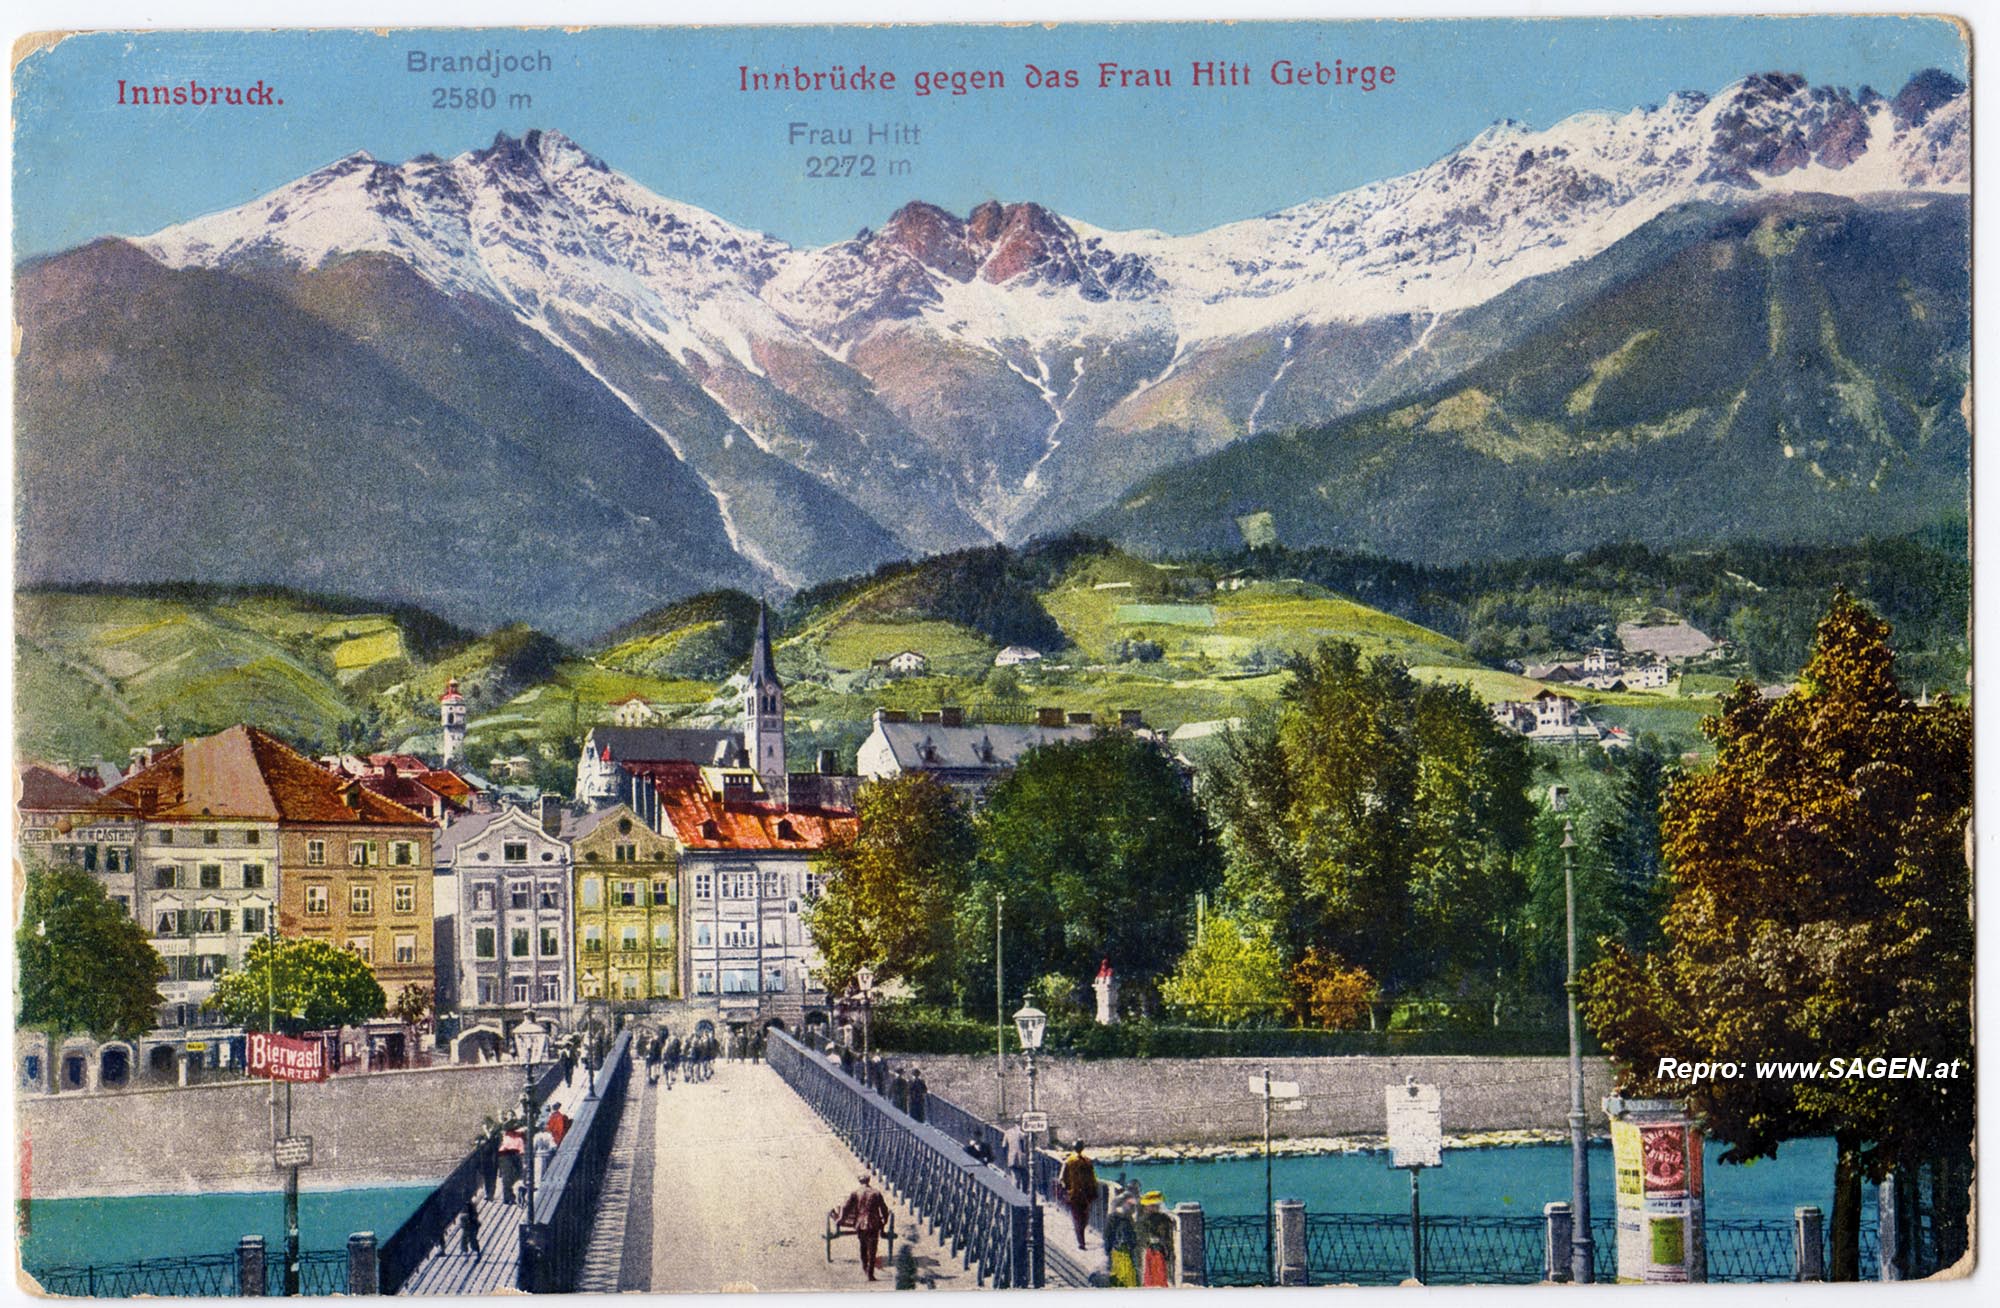 Innsbruck, Innbrücke gegen das Frau Hitt Gebirge